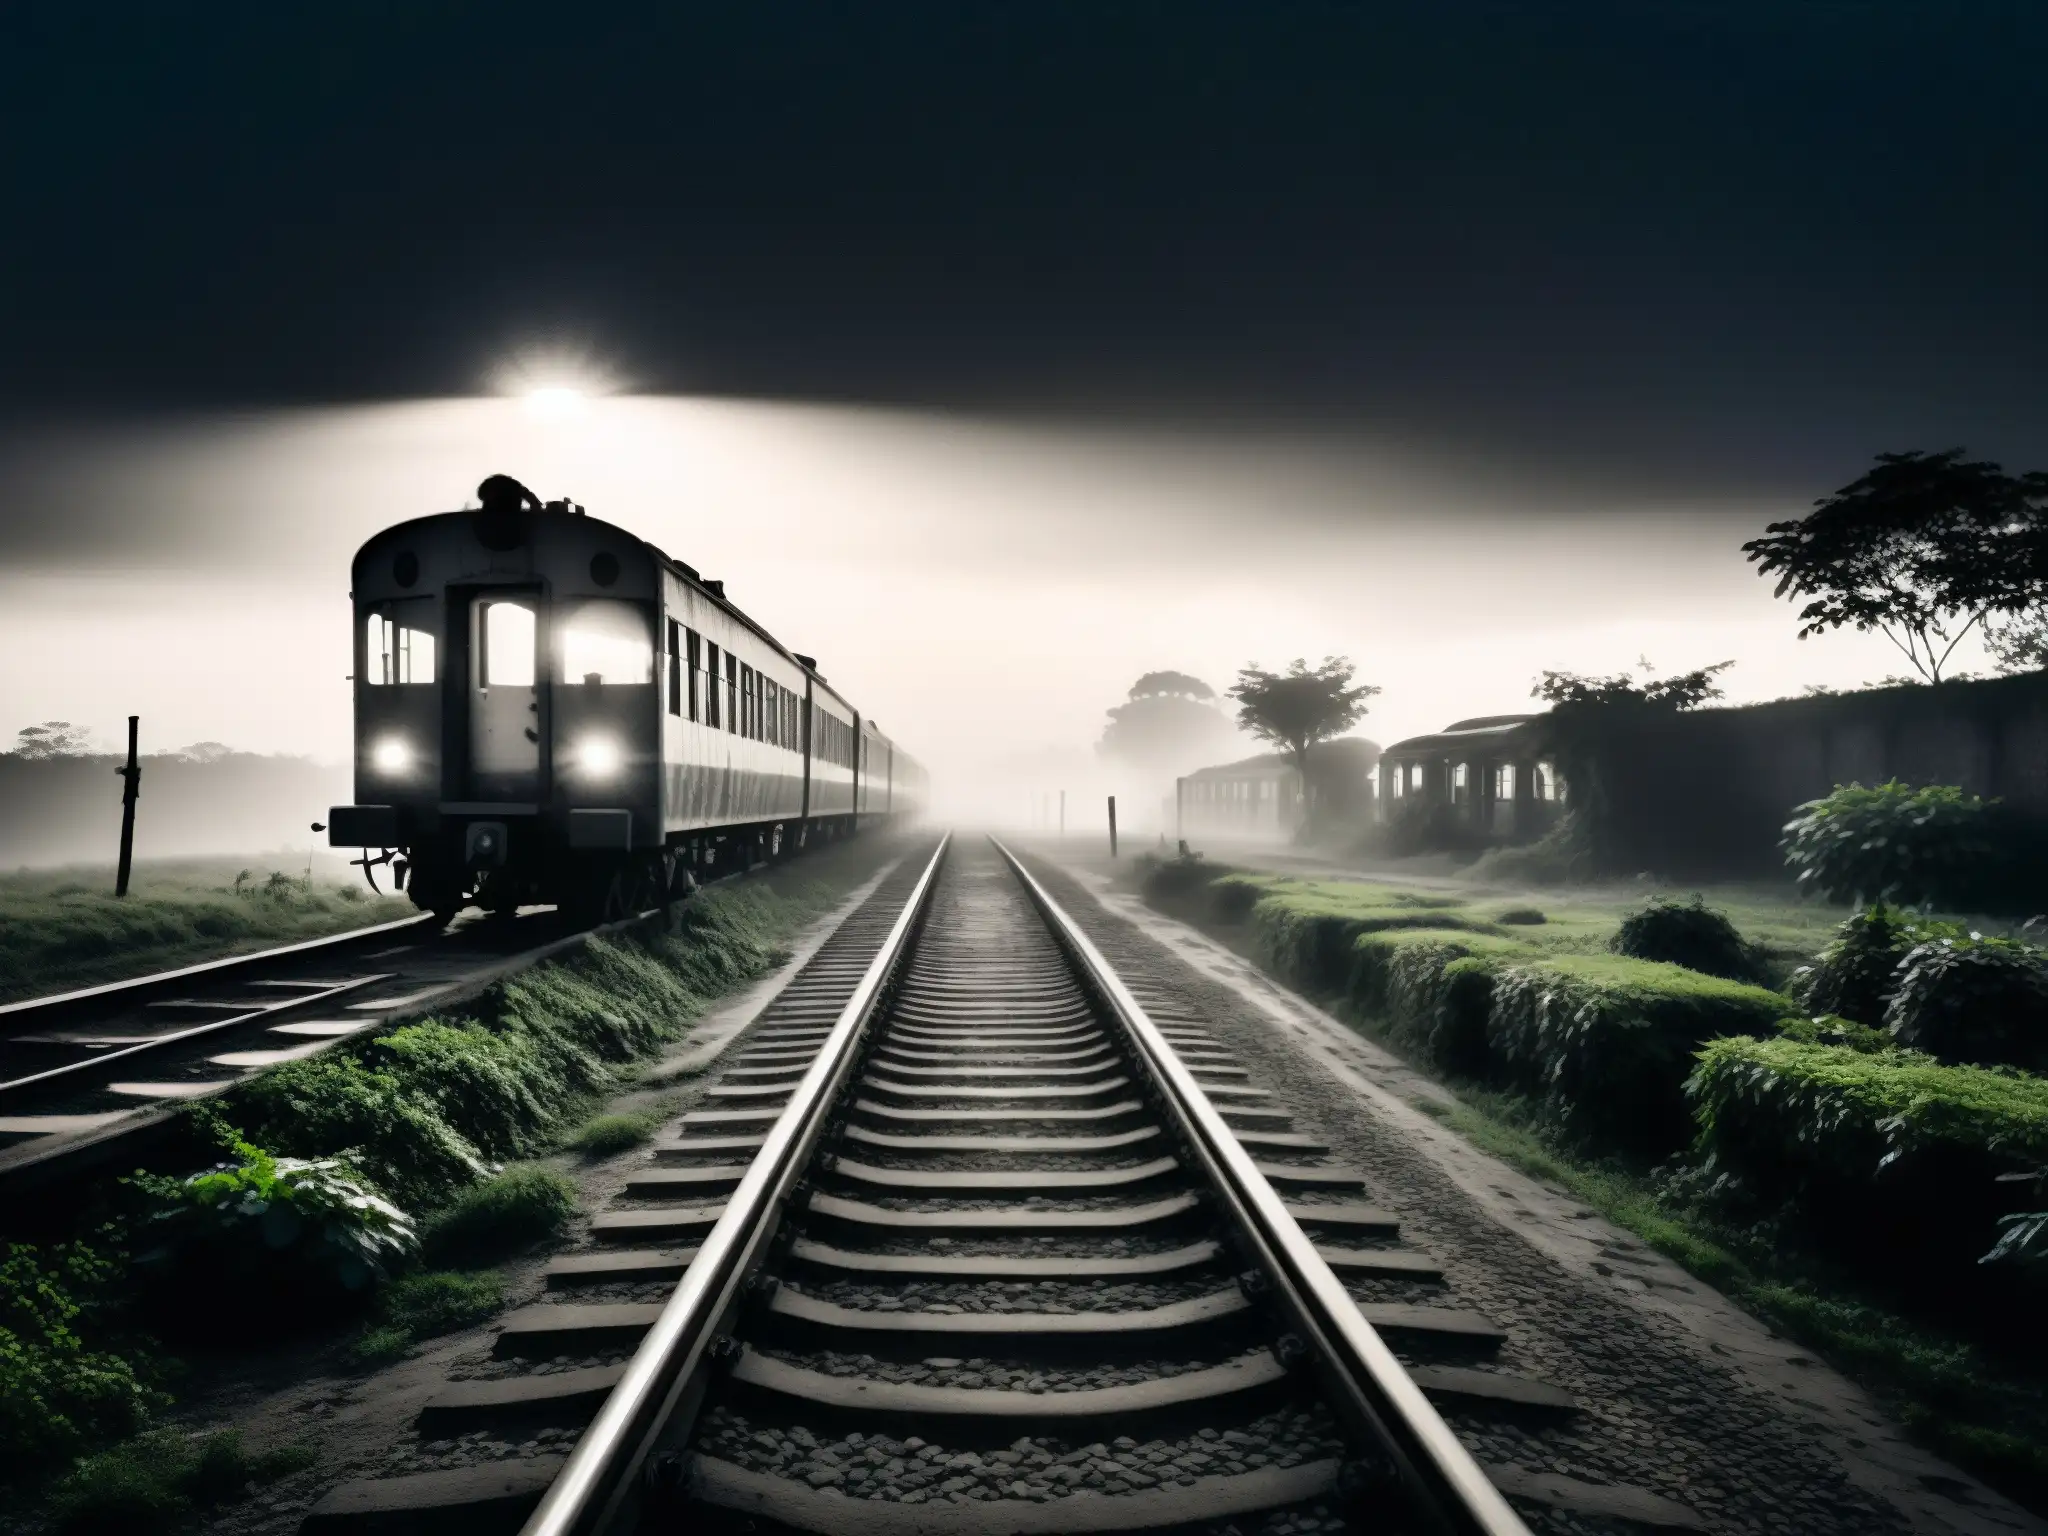 Imagen en blanco y negro del fantasma del tren en Bangladesh, en la noche neblinosa y desolada, rodeado de una atmósfera misteriosa y sobrecogedora